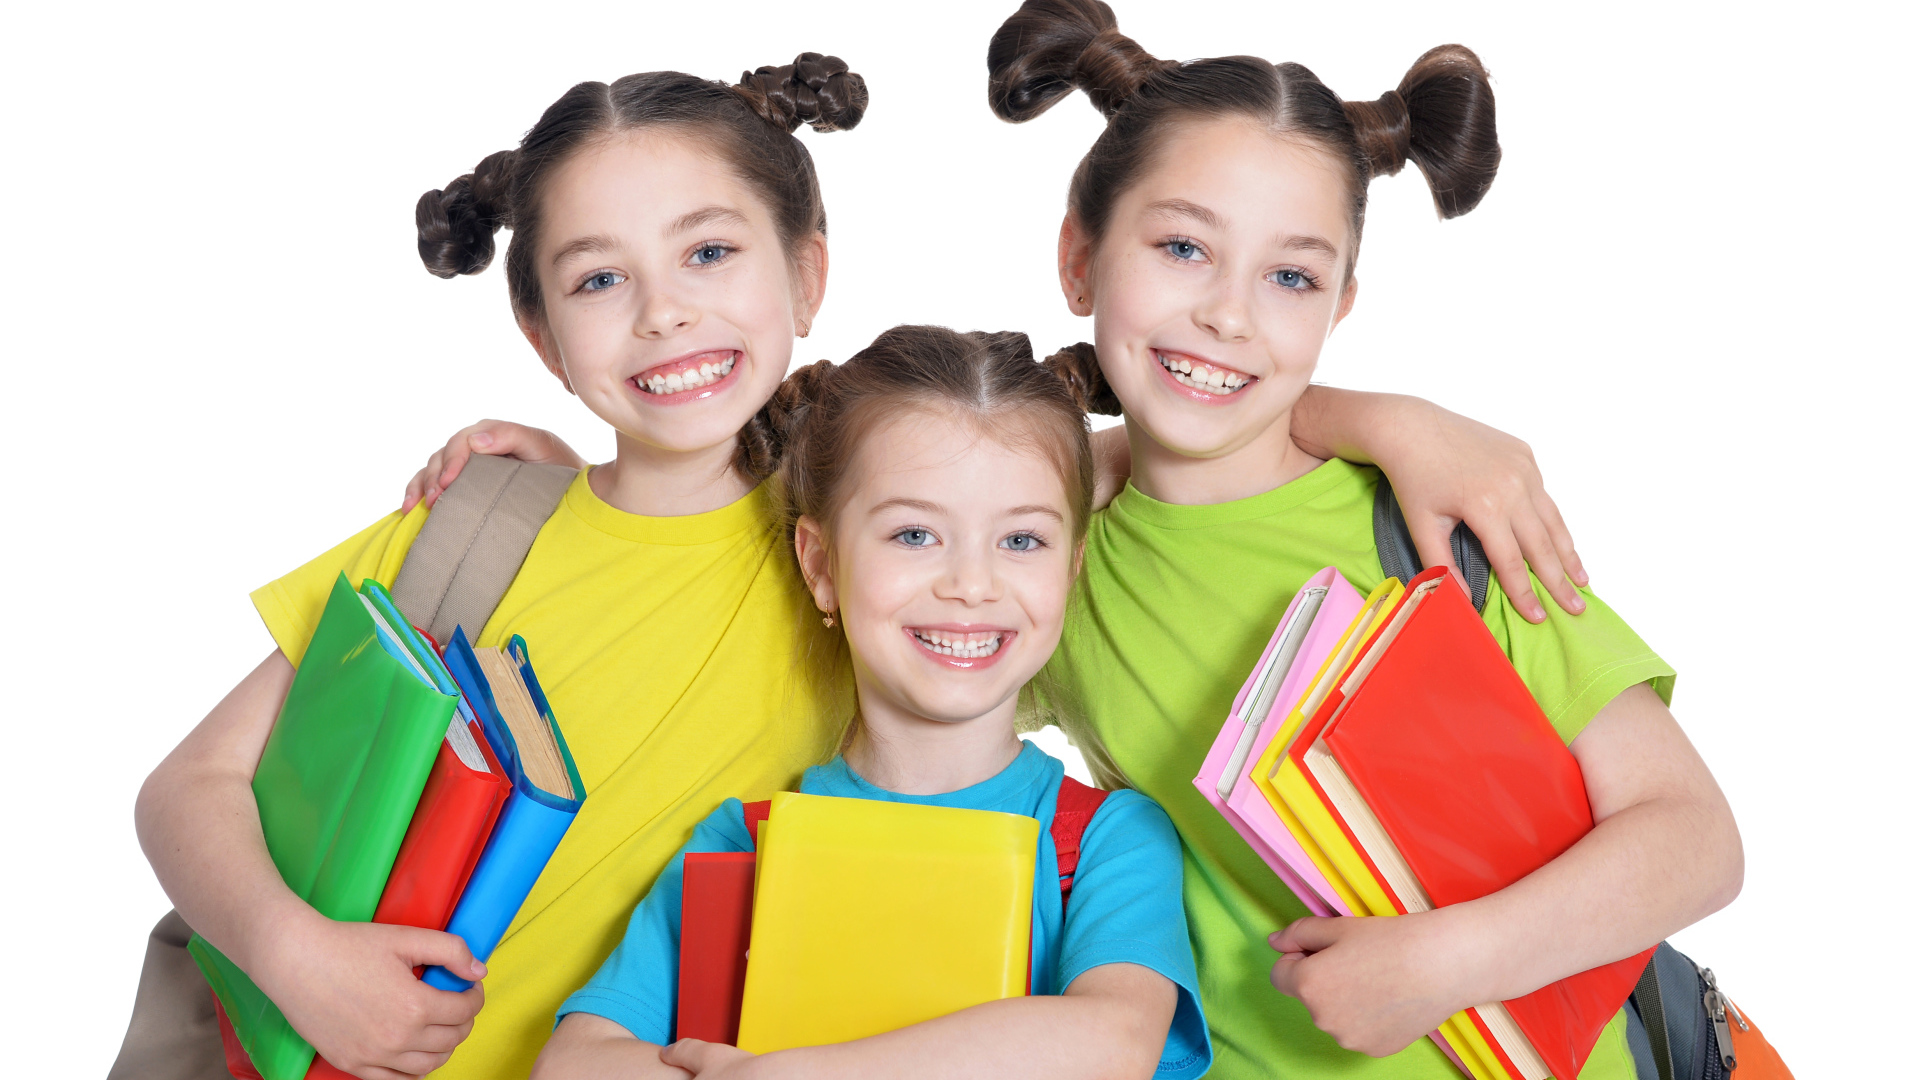 Три маленькие улыбающиеся девочки с книгами на белом фоне